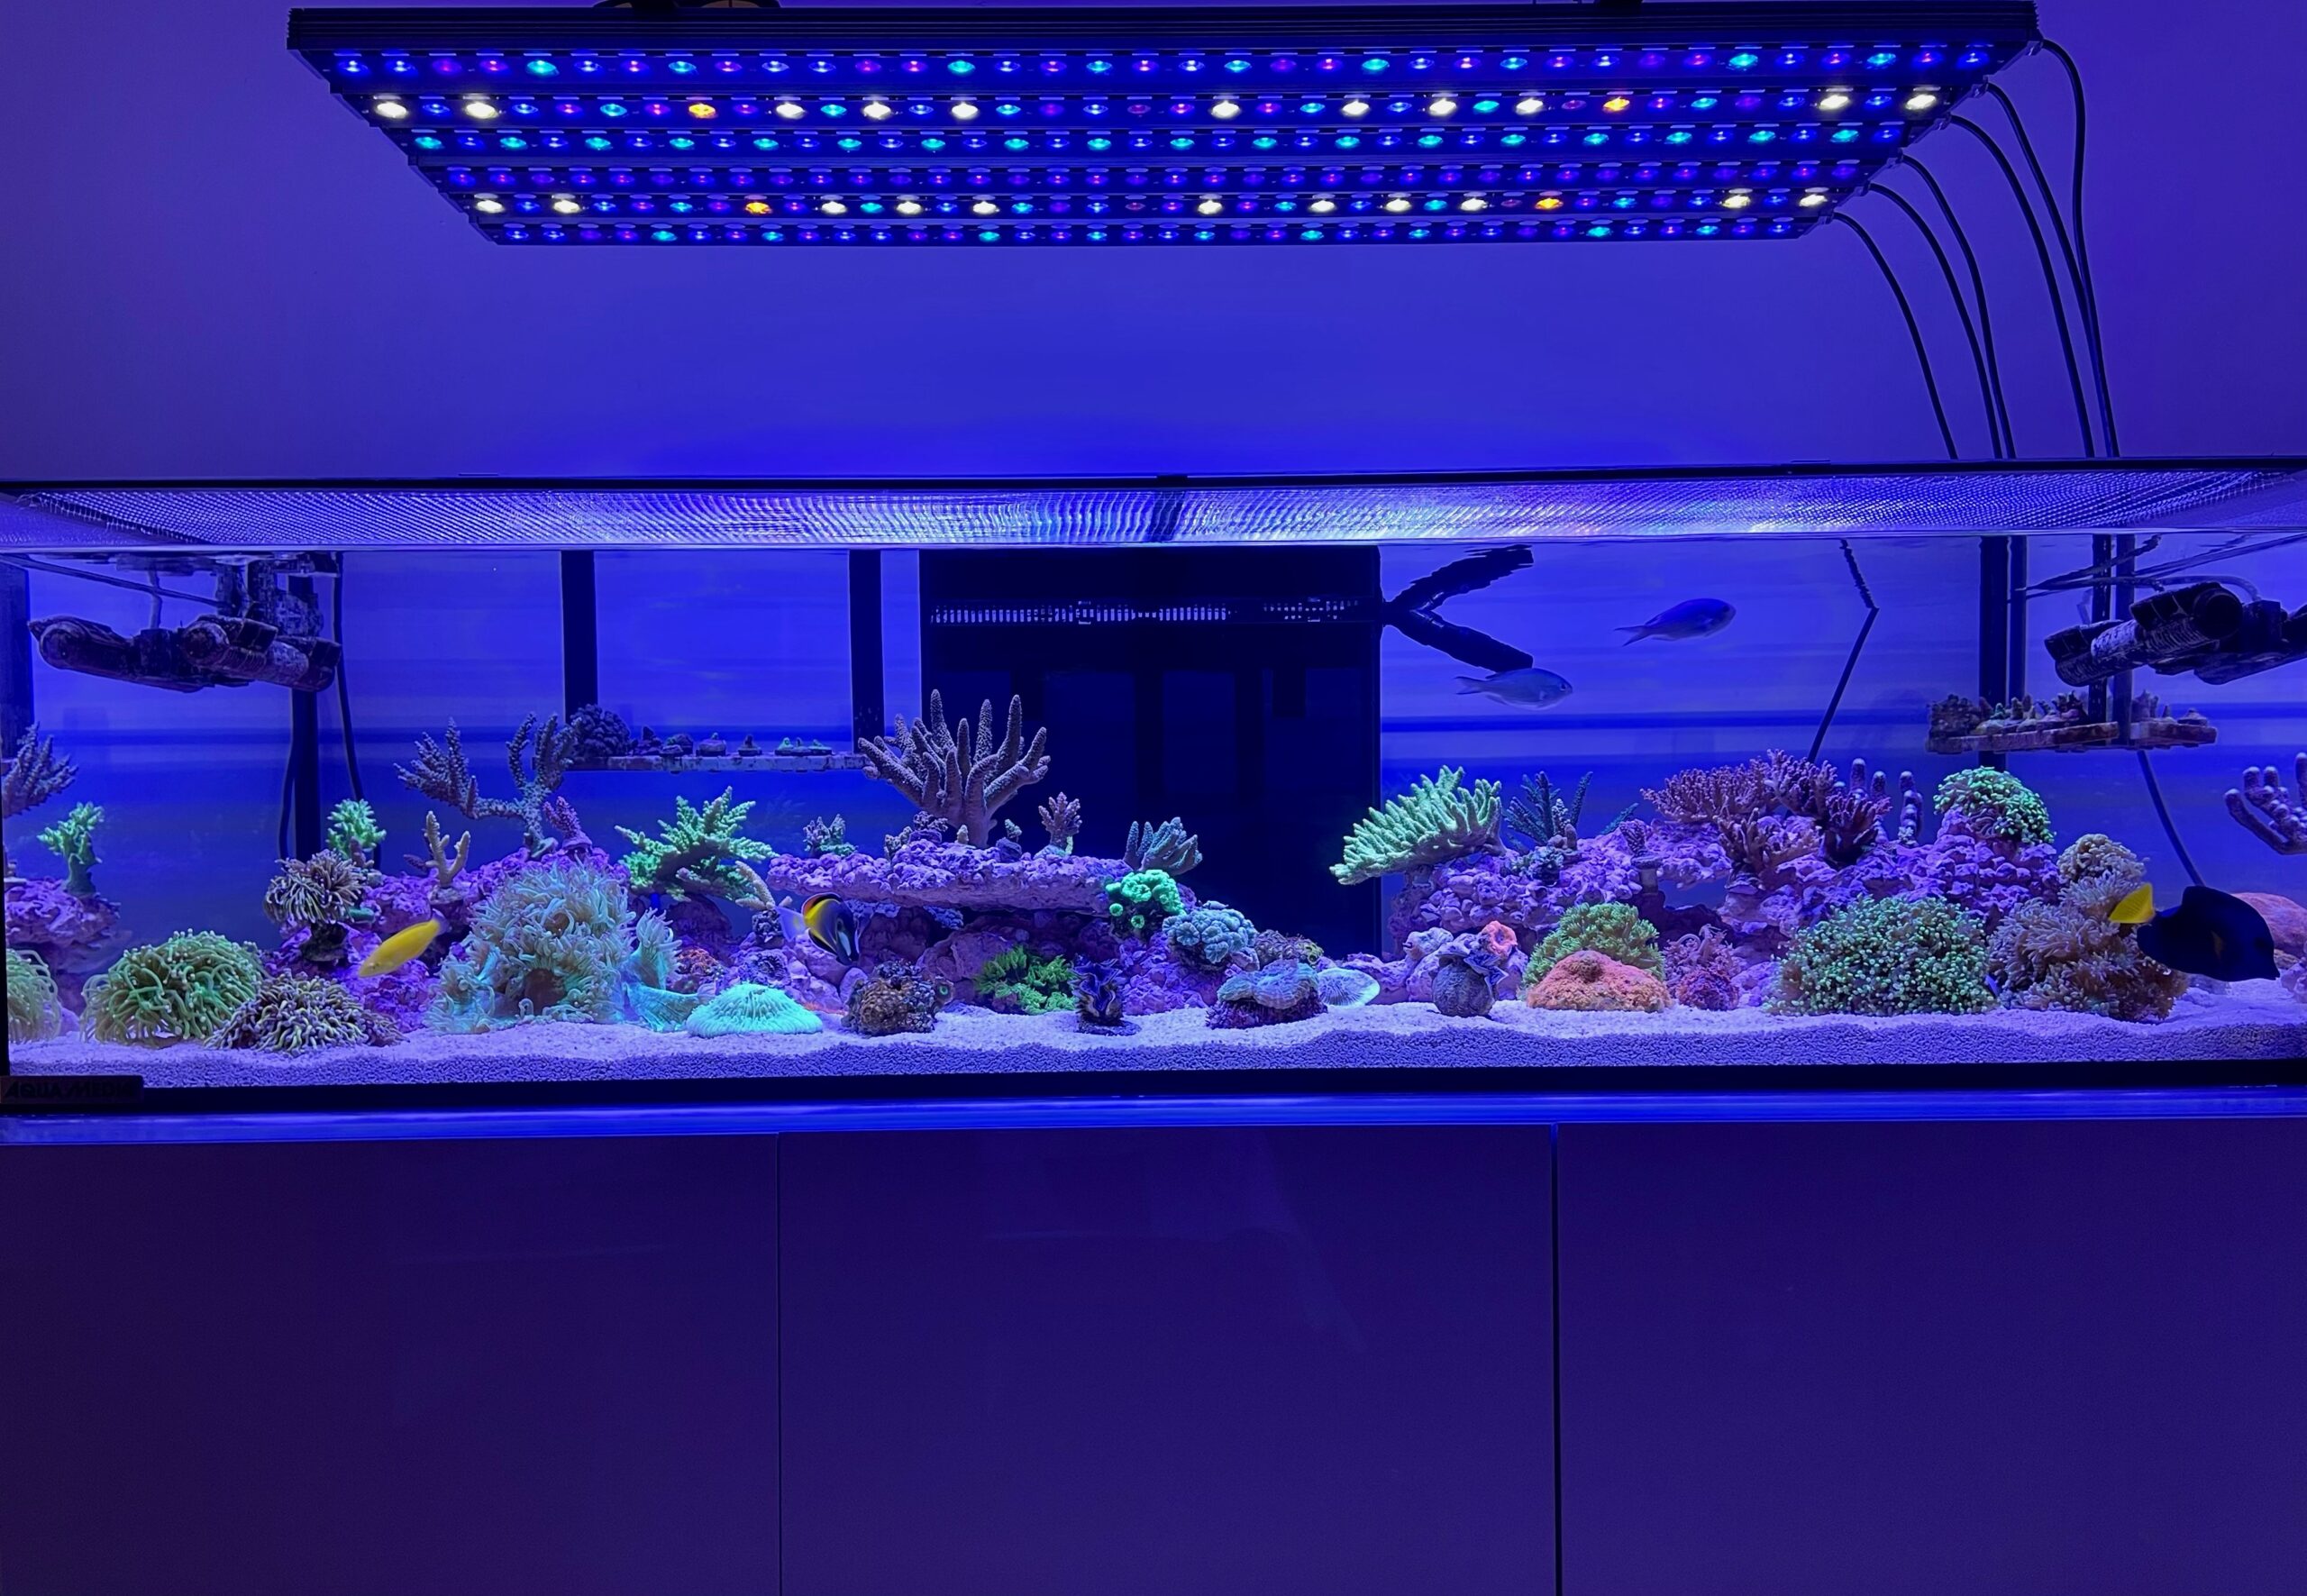 osix-or3-reef-水族馆-led-照明-1